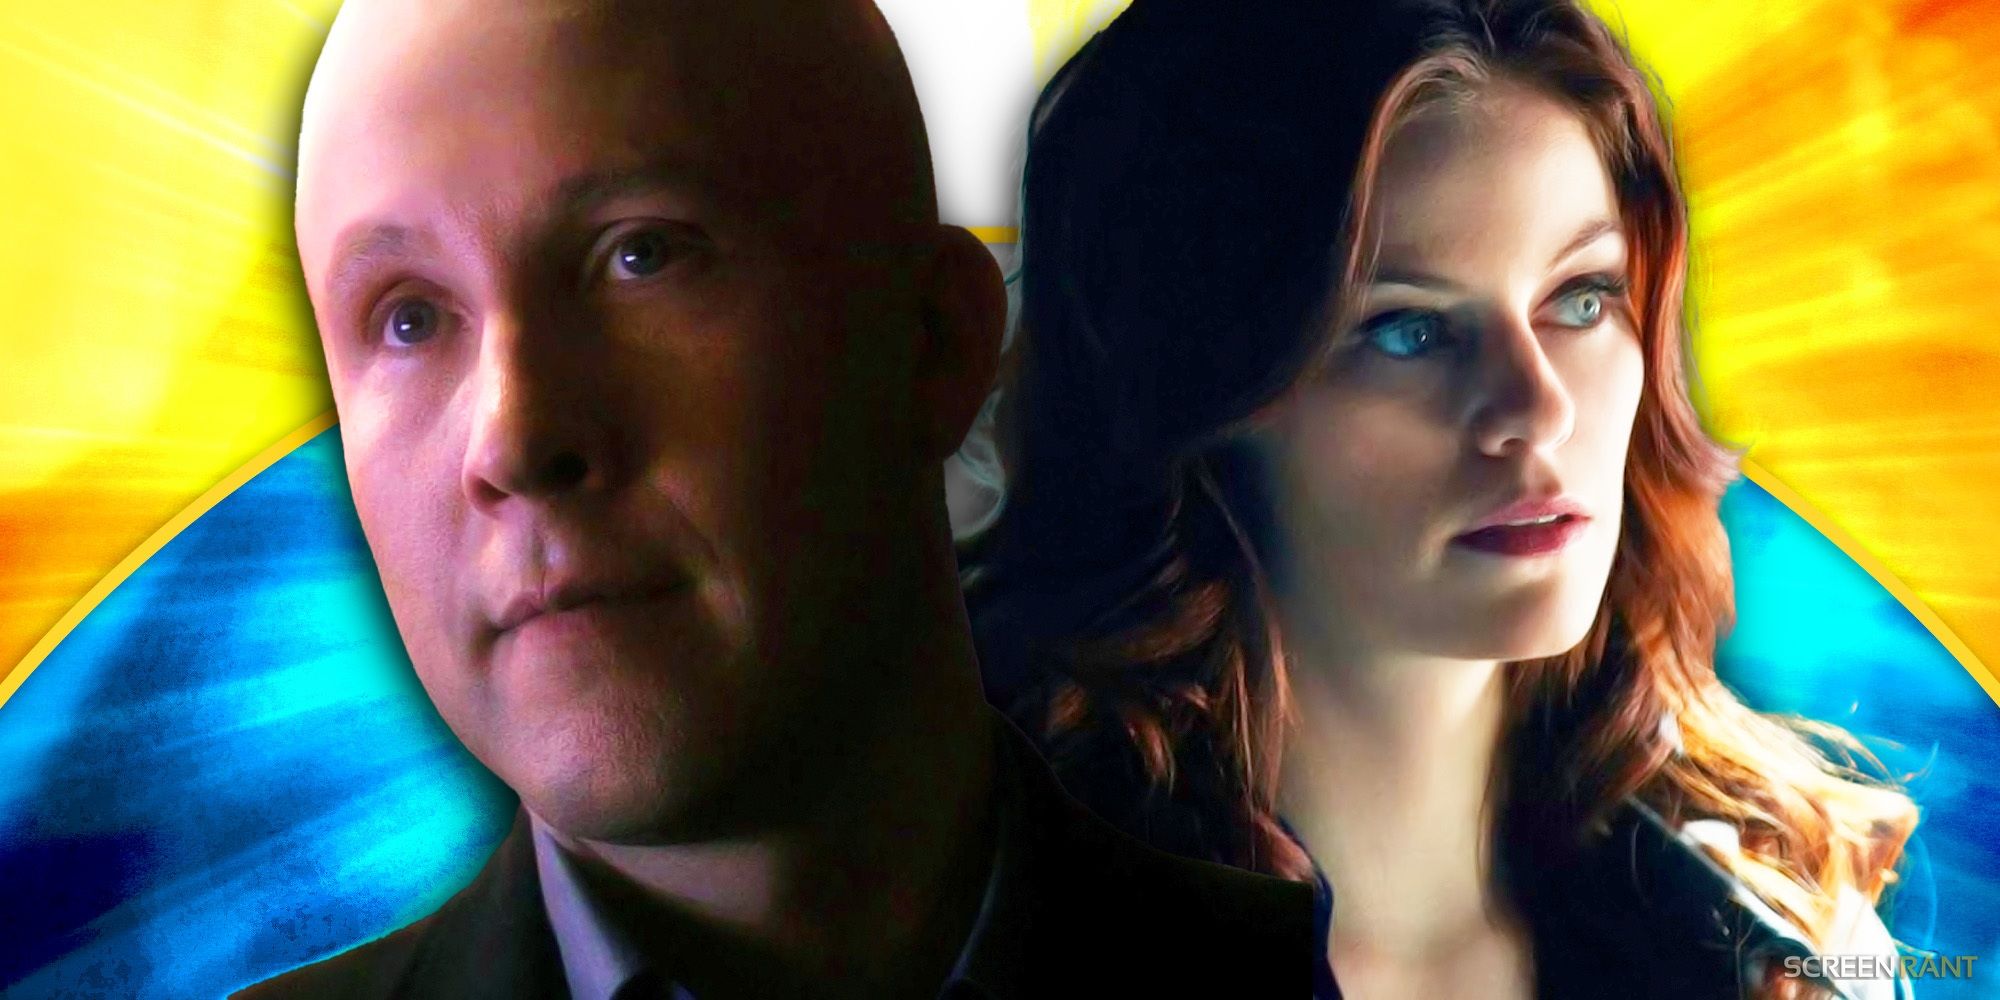 Michael Rosenbaum de Smallville habla sobre su controvertido final de Lex Luthor 13 años después de su emisión